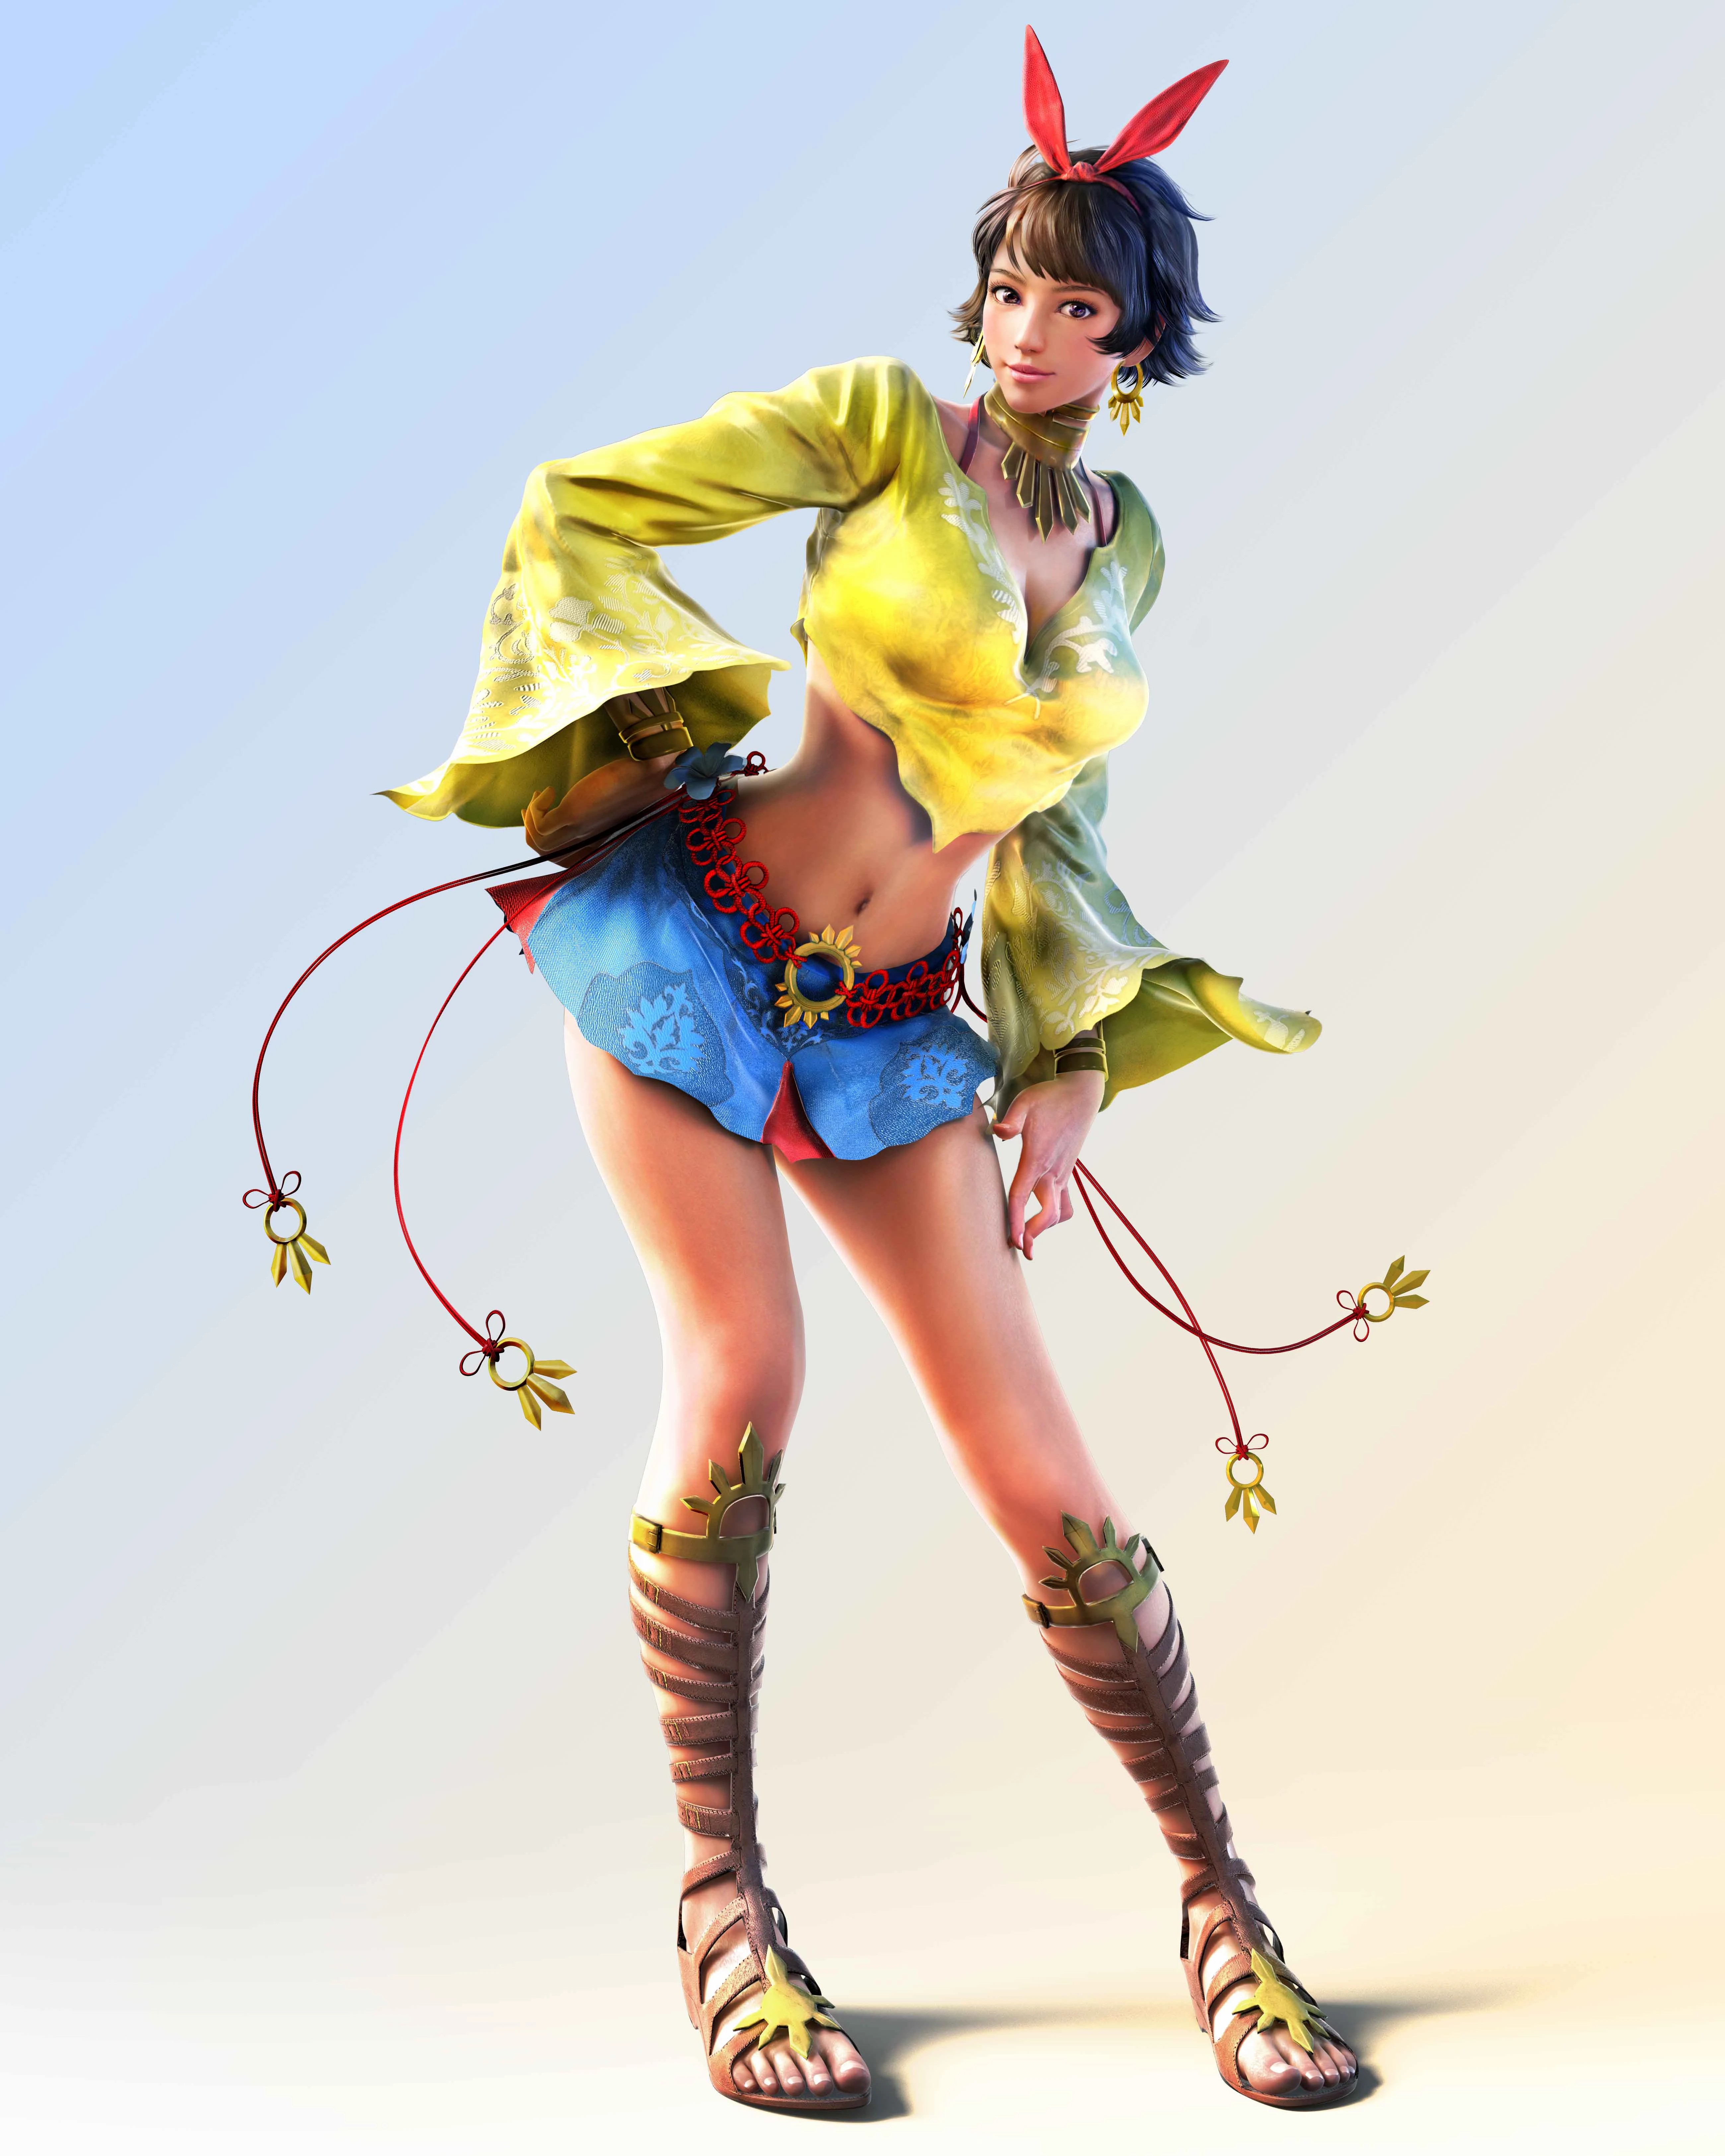 《铁拳8》首个DLC角色“乔西”泄露 运动员兼职模特